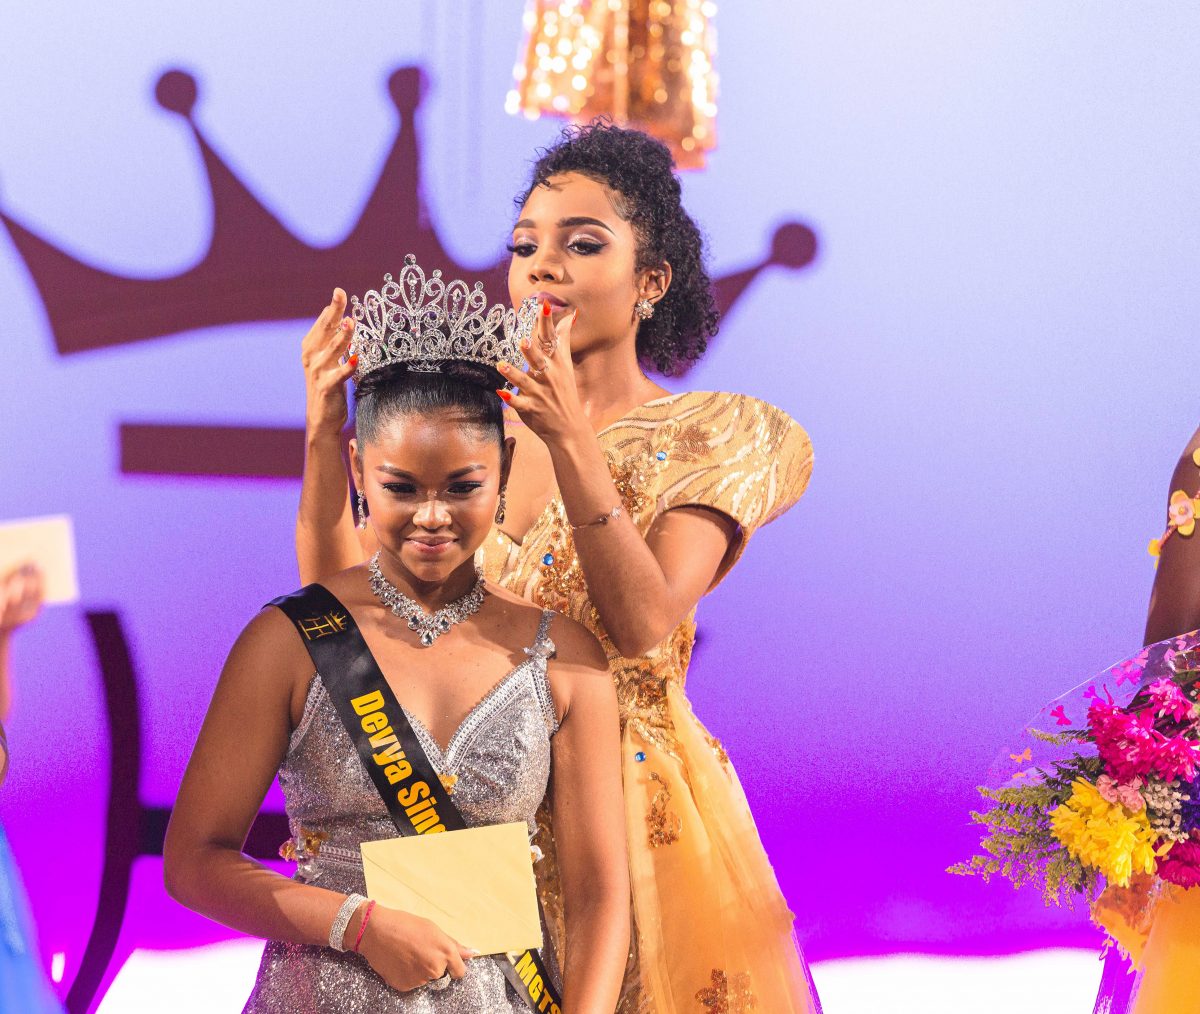  Devya crowned by Miss Guyana Talented Teen 2016, Aliya Wong.
